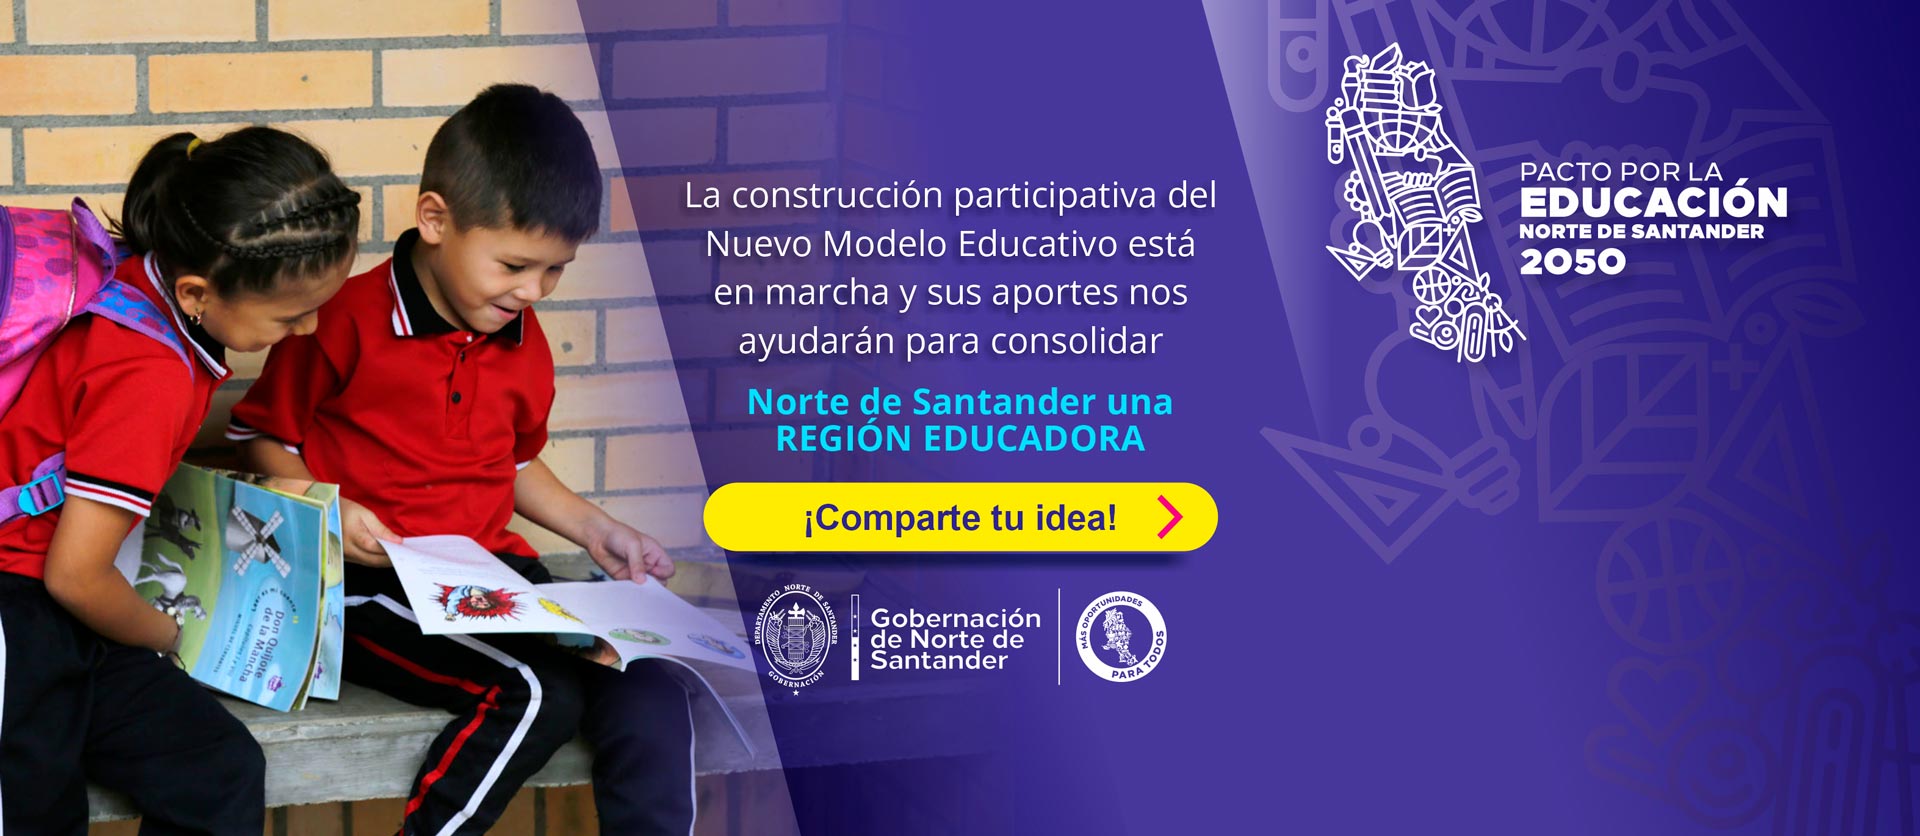 Este enlace abre la pagina de Pacto por la educación Norte de Santander 2050